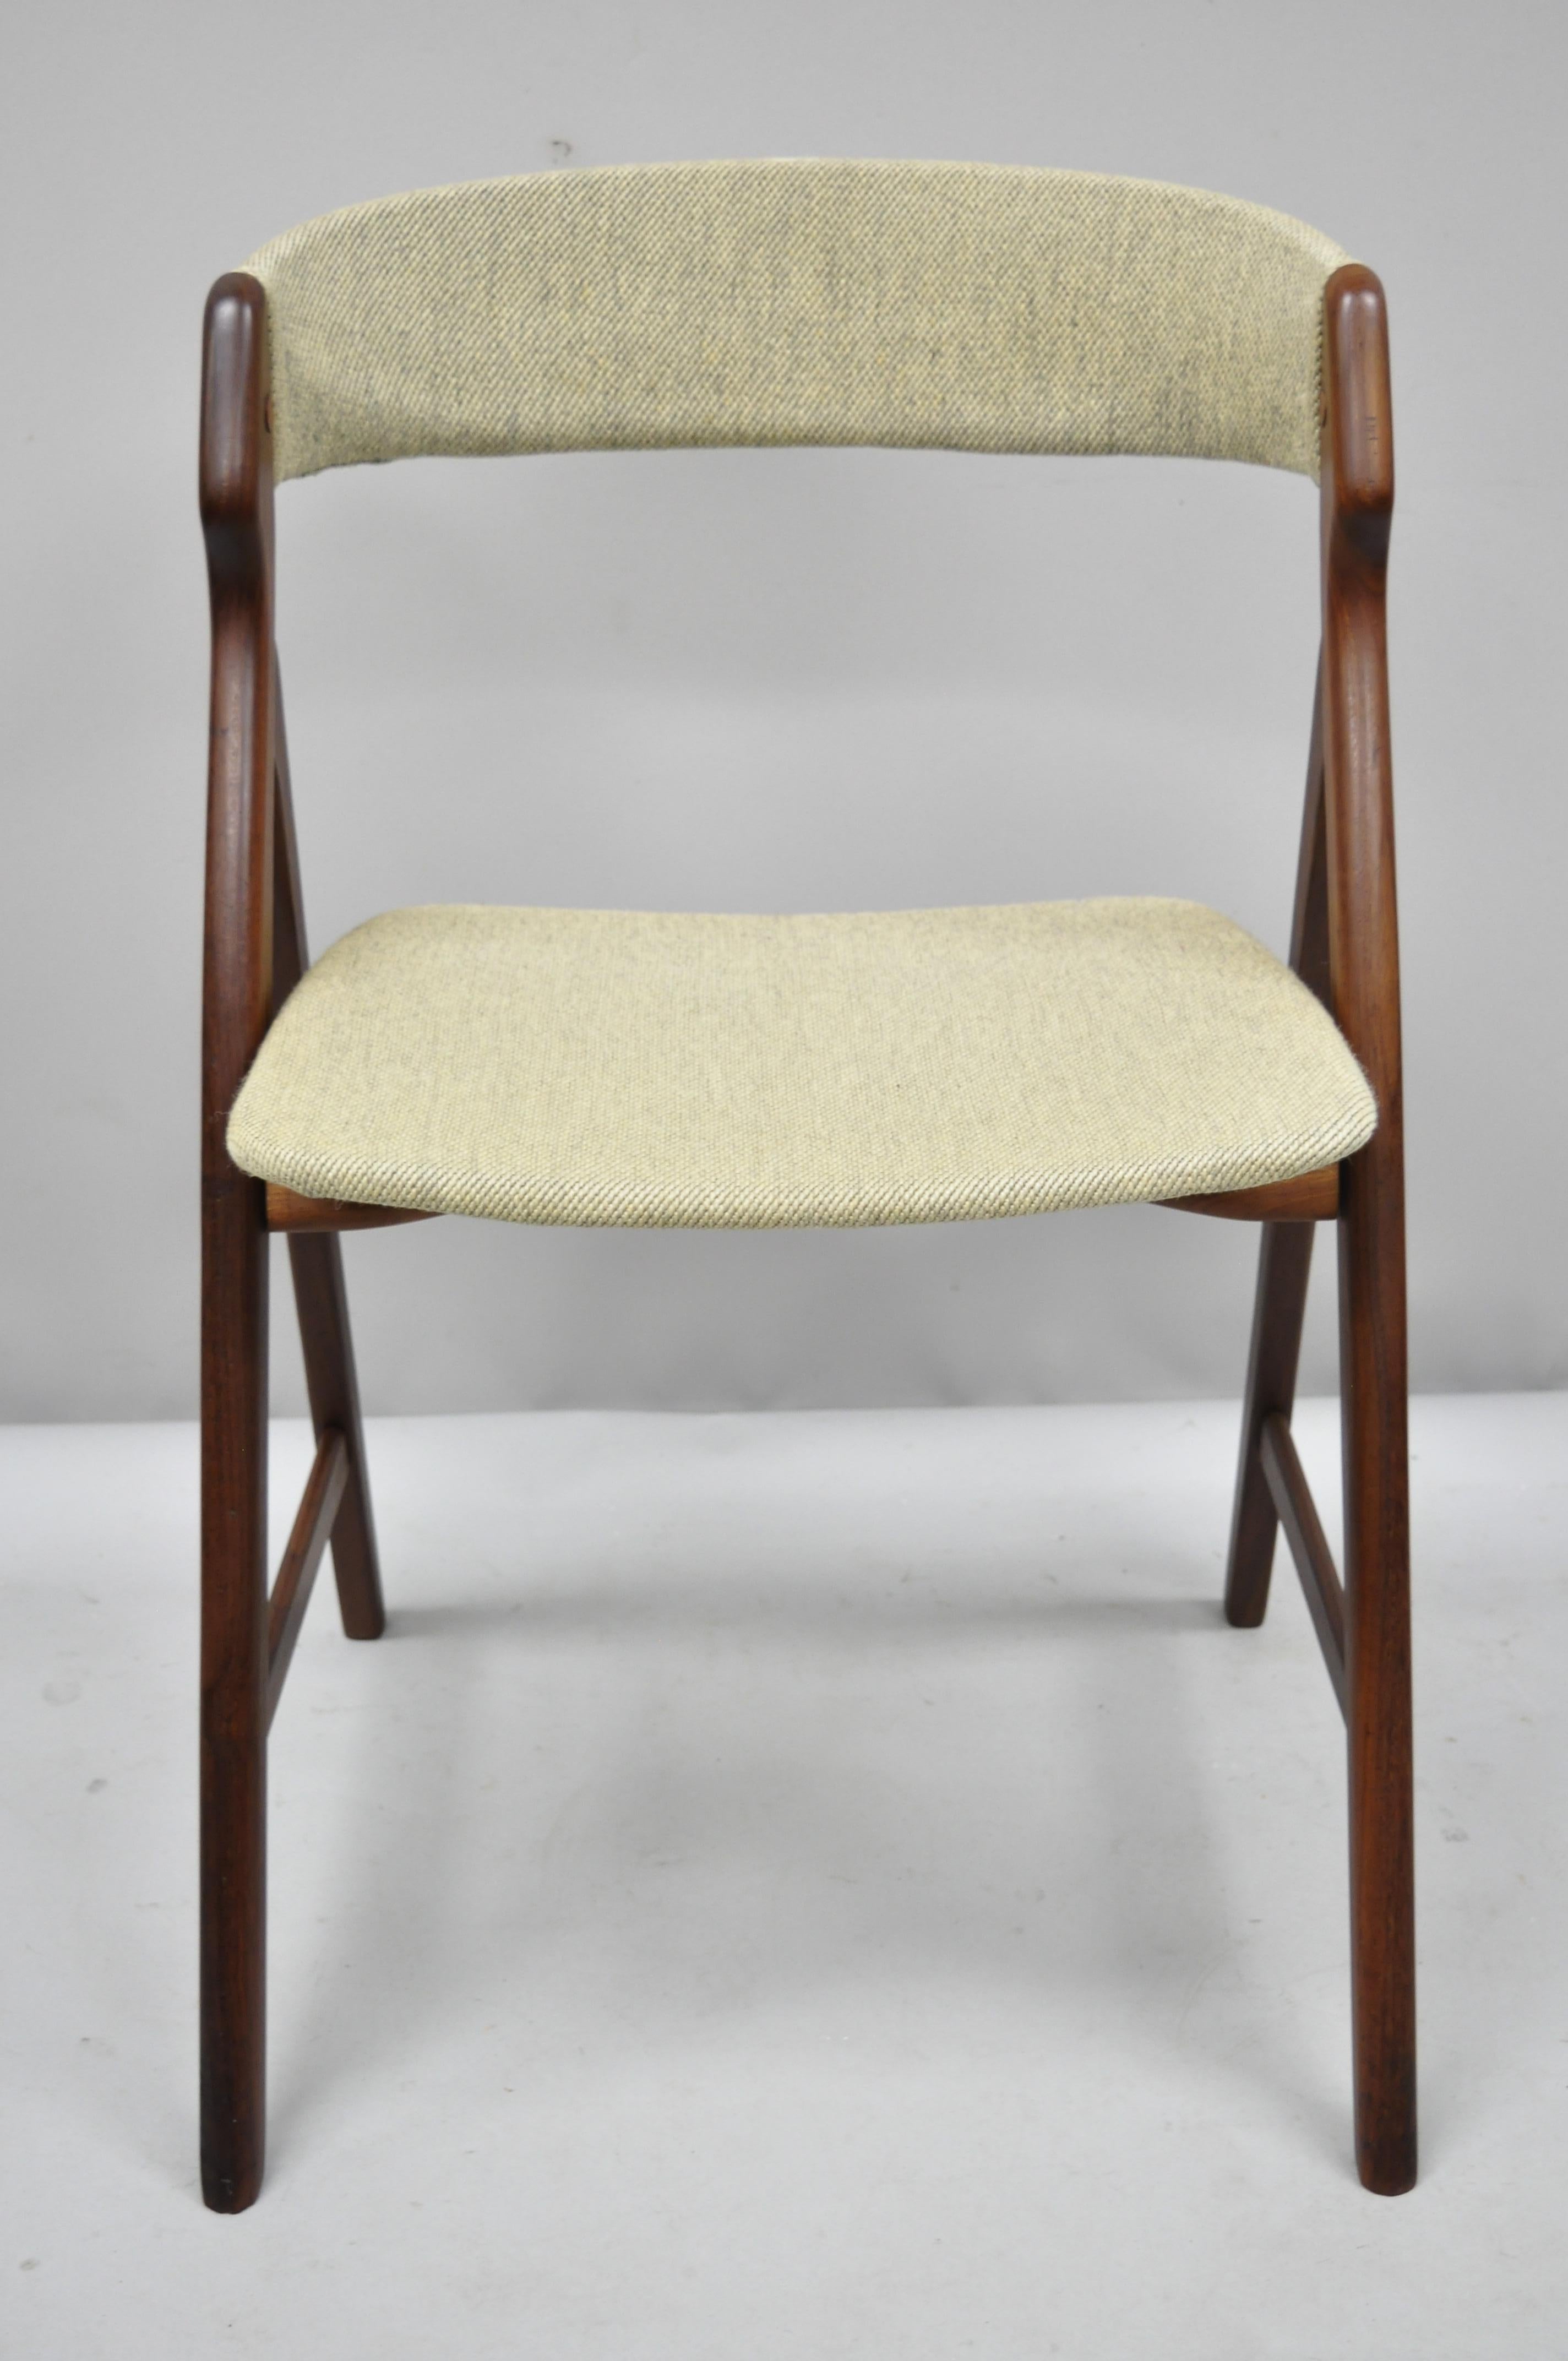 Chaise de salle à manger en teck de style danois moderne du milieu du siècle, signée T.H. Harlev Farstrup. Dossier incurvé, design en forme de A, construction en bois de teck massif, beau grain de bois, pieds effilés, lignes épurées et modernistes,